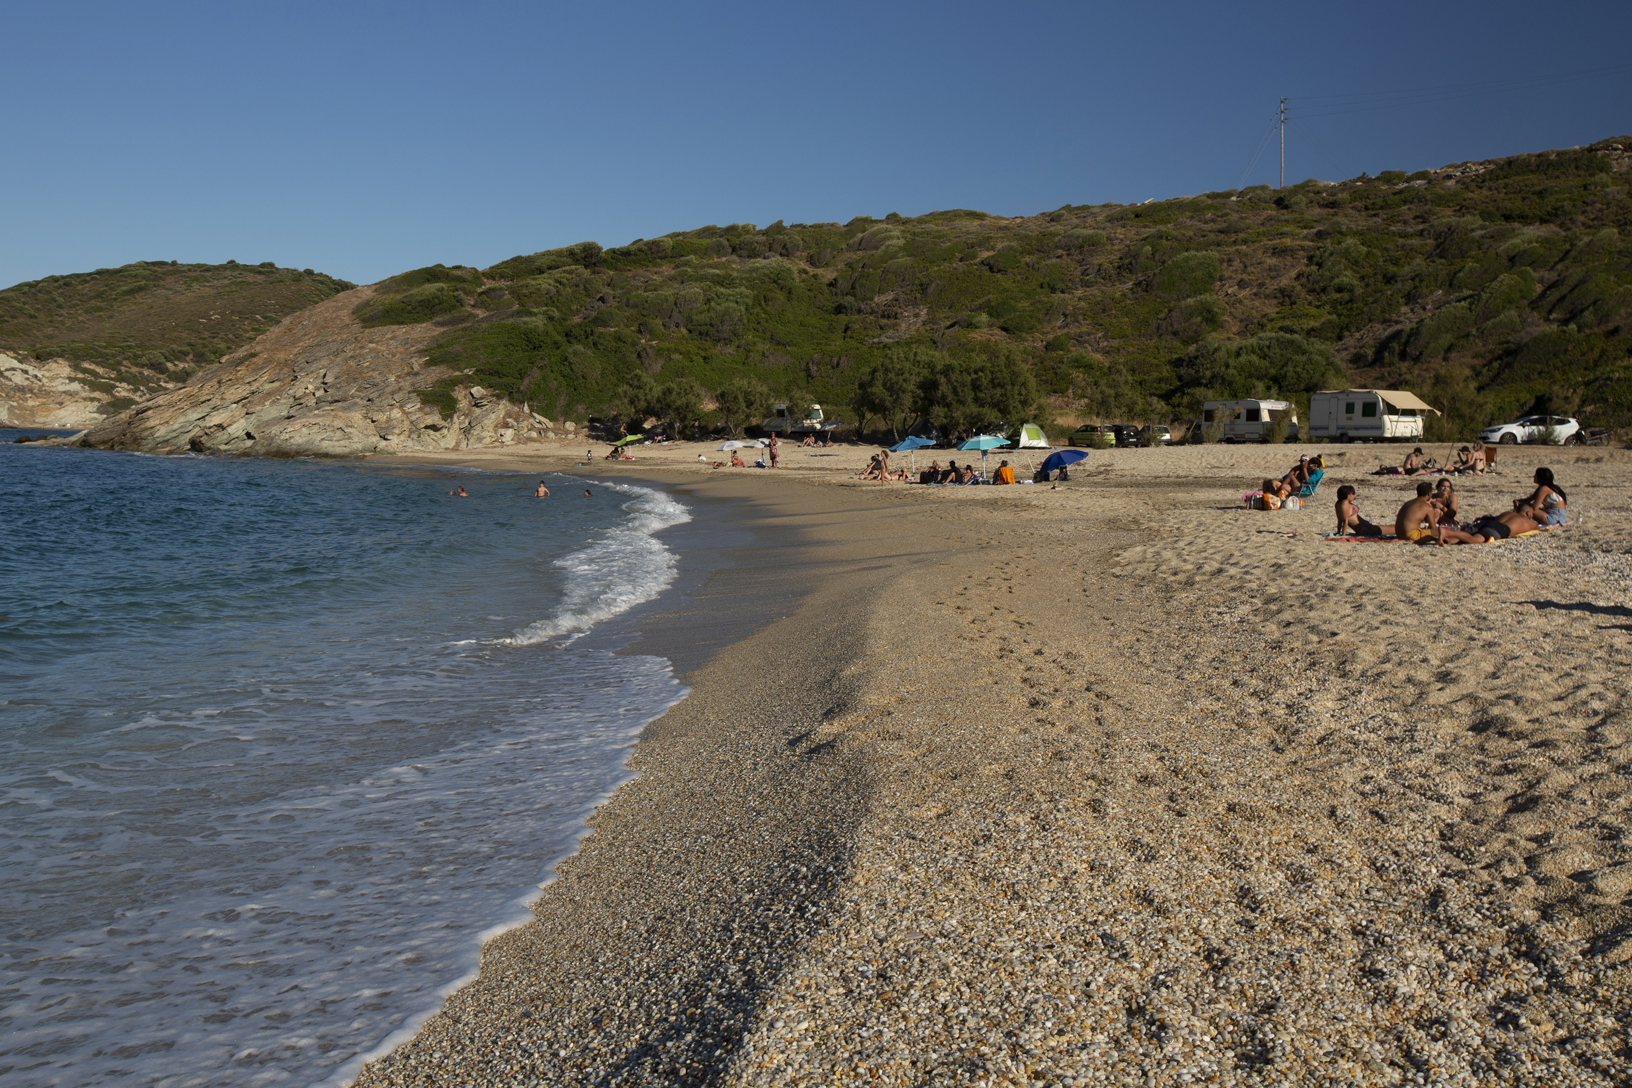 Παραλία Χερόμυλος, χωριό Άγιοι Απόστολοι. Φωτογραφία: ©Βασίλης Συκάς, για τον Δήμο Κύμης-Αλιβερίου